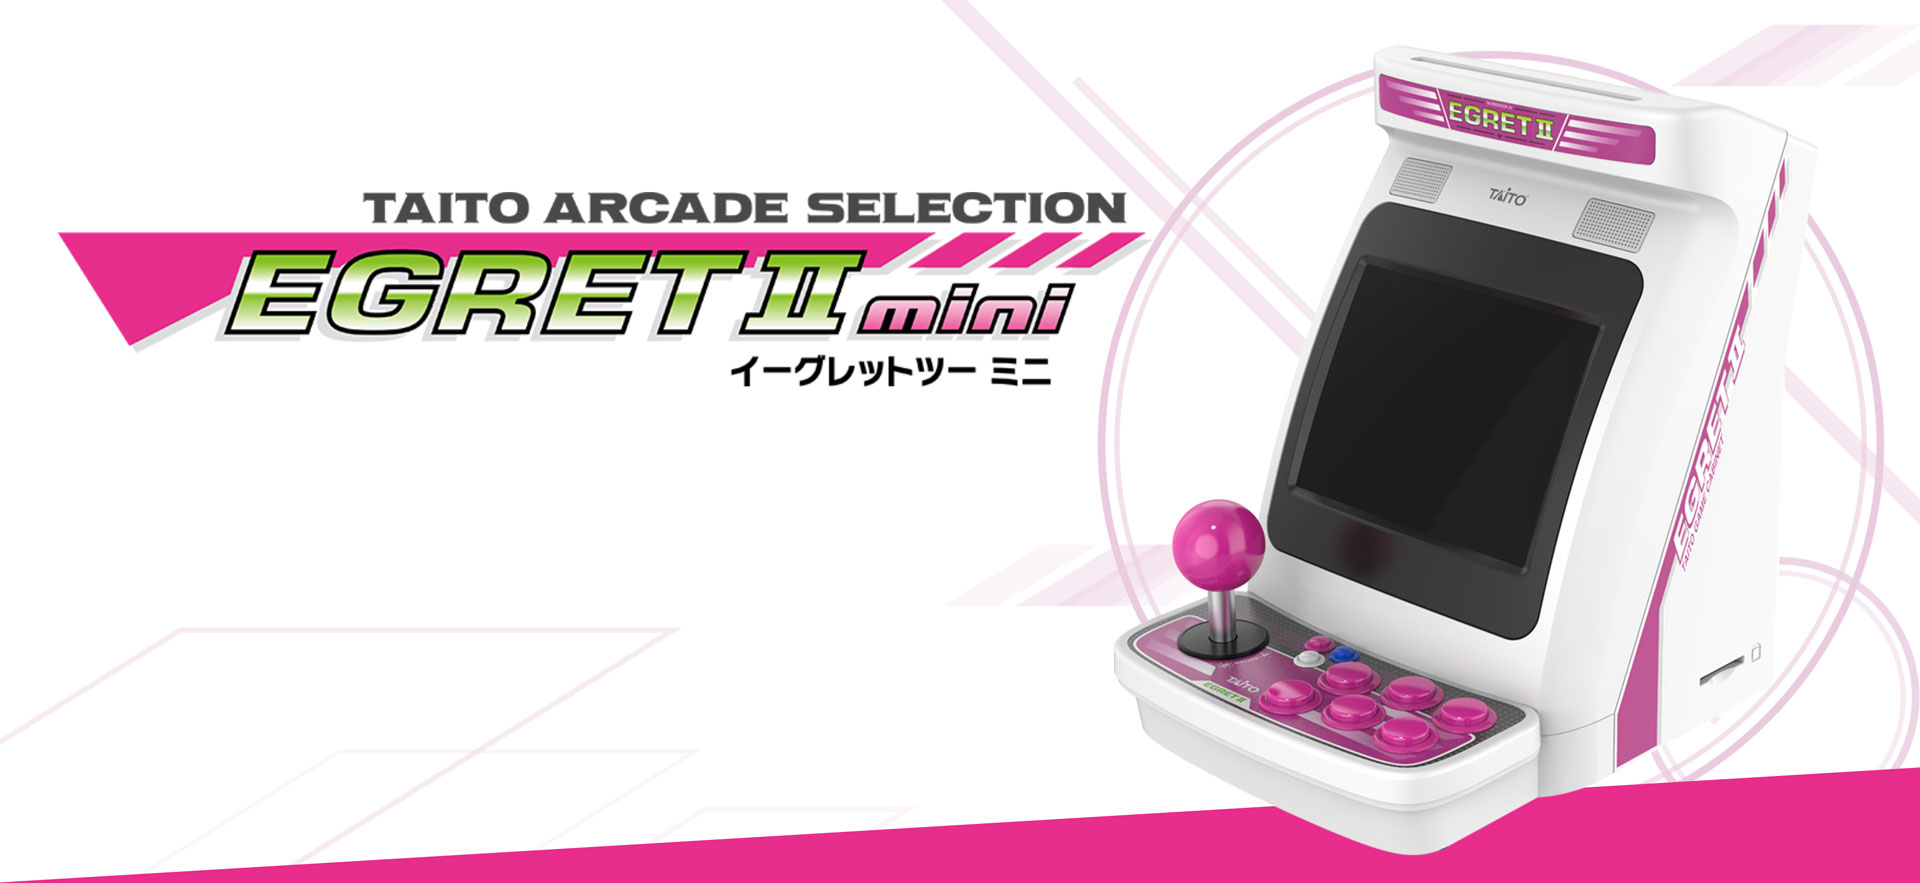 Arcade: Taito EGRET II Mini